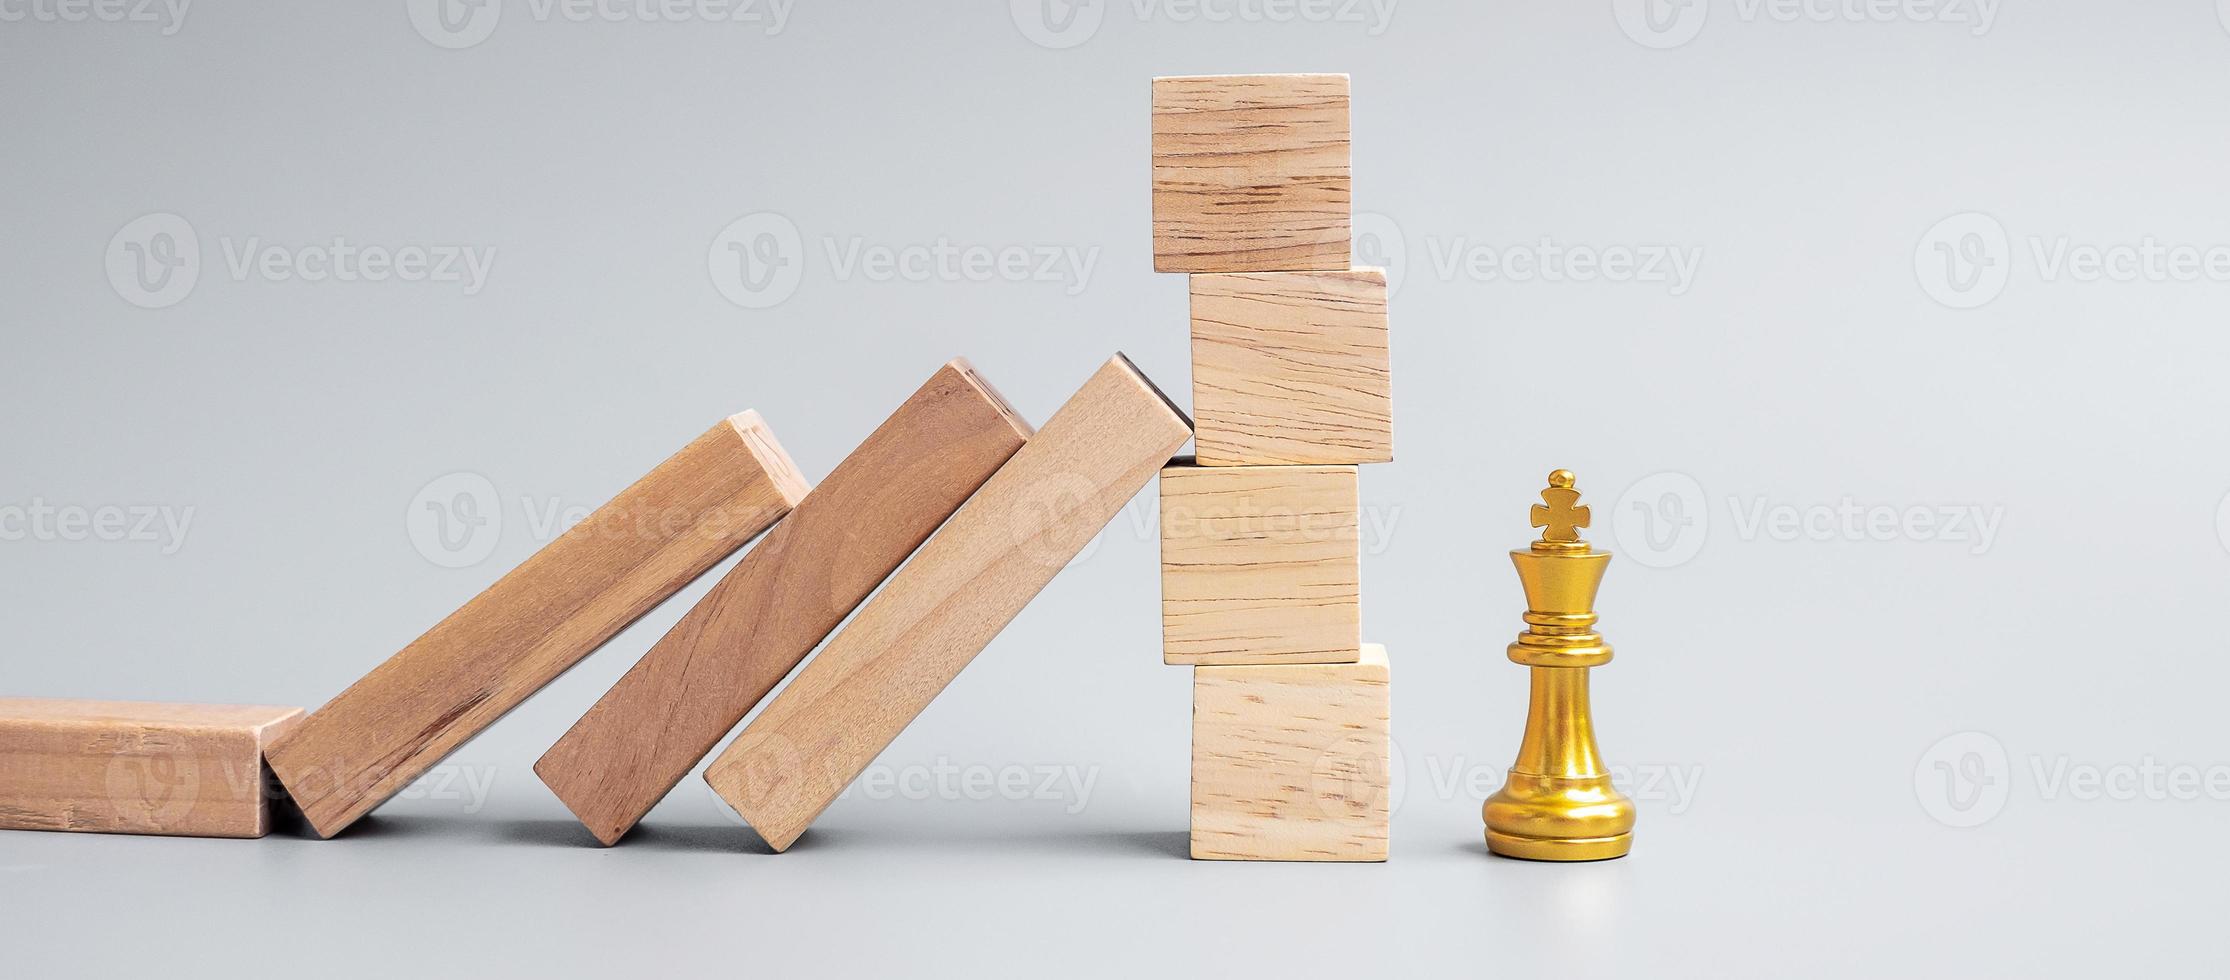 blocchi di legno o domino che cadono sulla figura del re degli scacchi d'oro. affari, gestione del rischio, soluzione, regressione economica, assicurazione foto